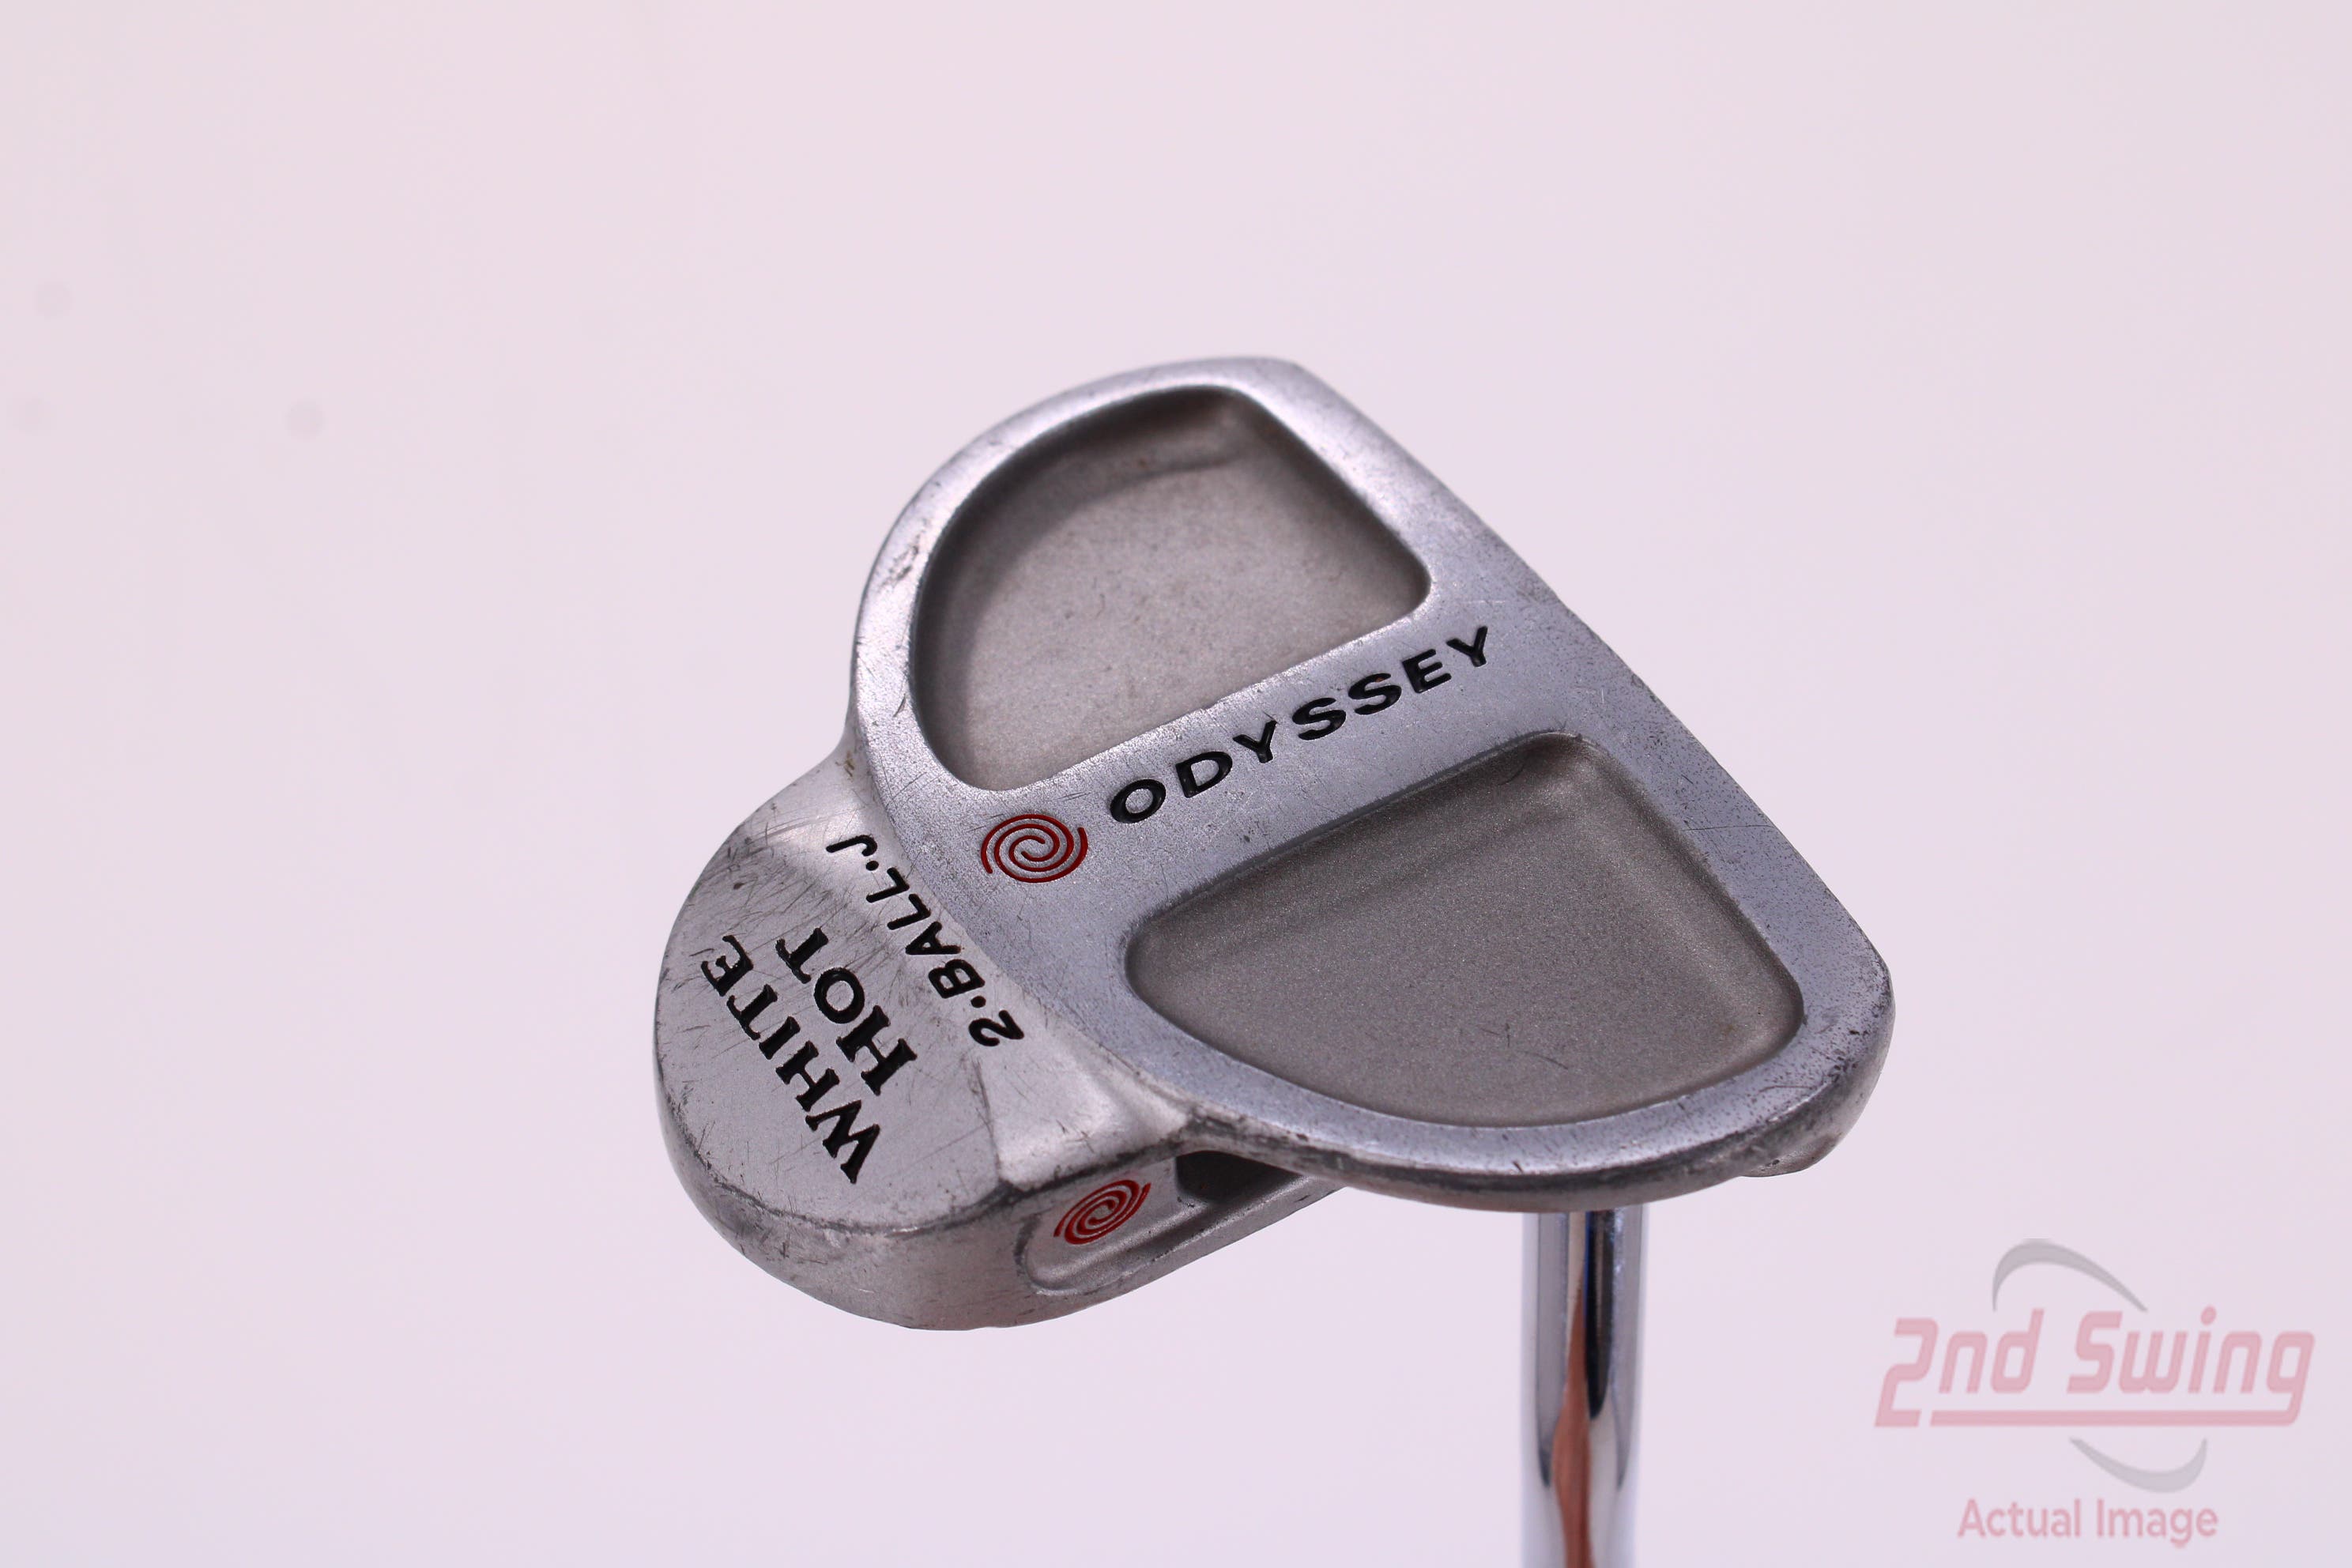 Odyssey White Hot 2-Ball Blade Putter (D-62224258253) | 2nd Swing Golf